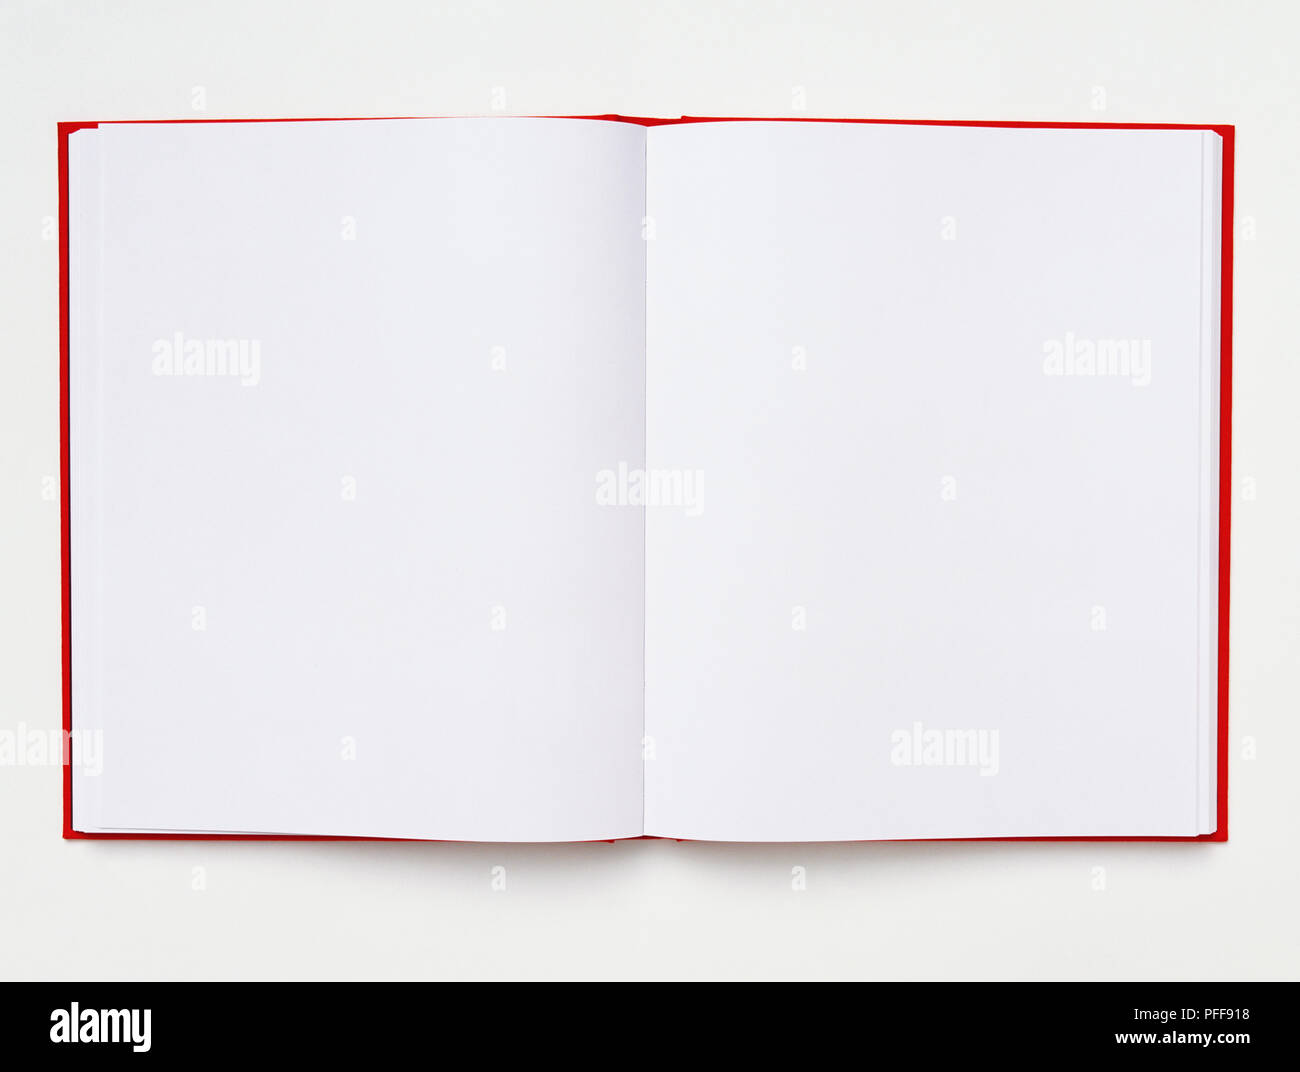 Libro aperto con pagine vuote e coperchio rosso, close up Foto Stock